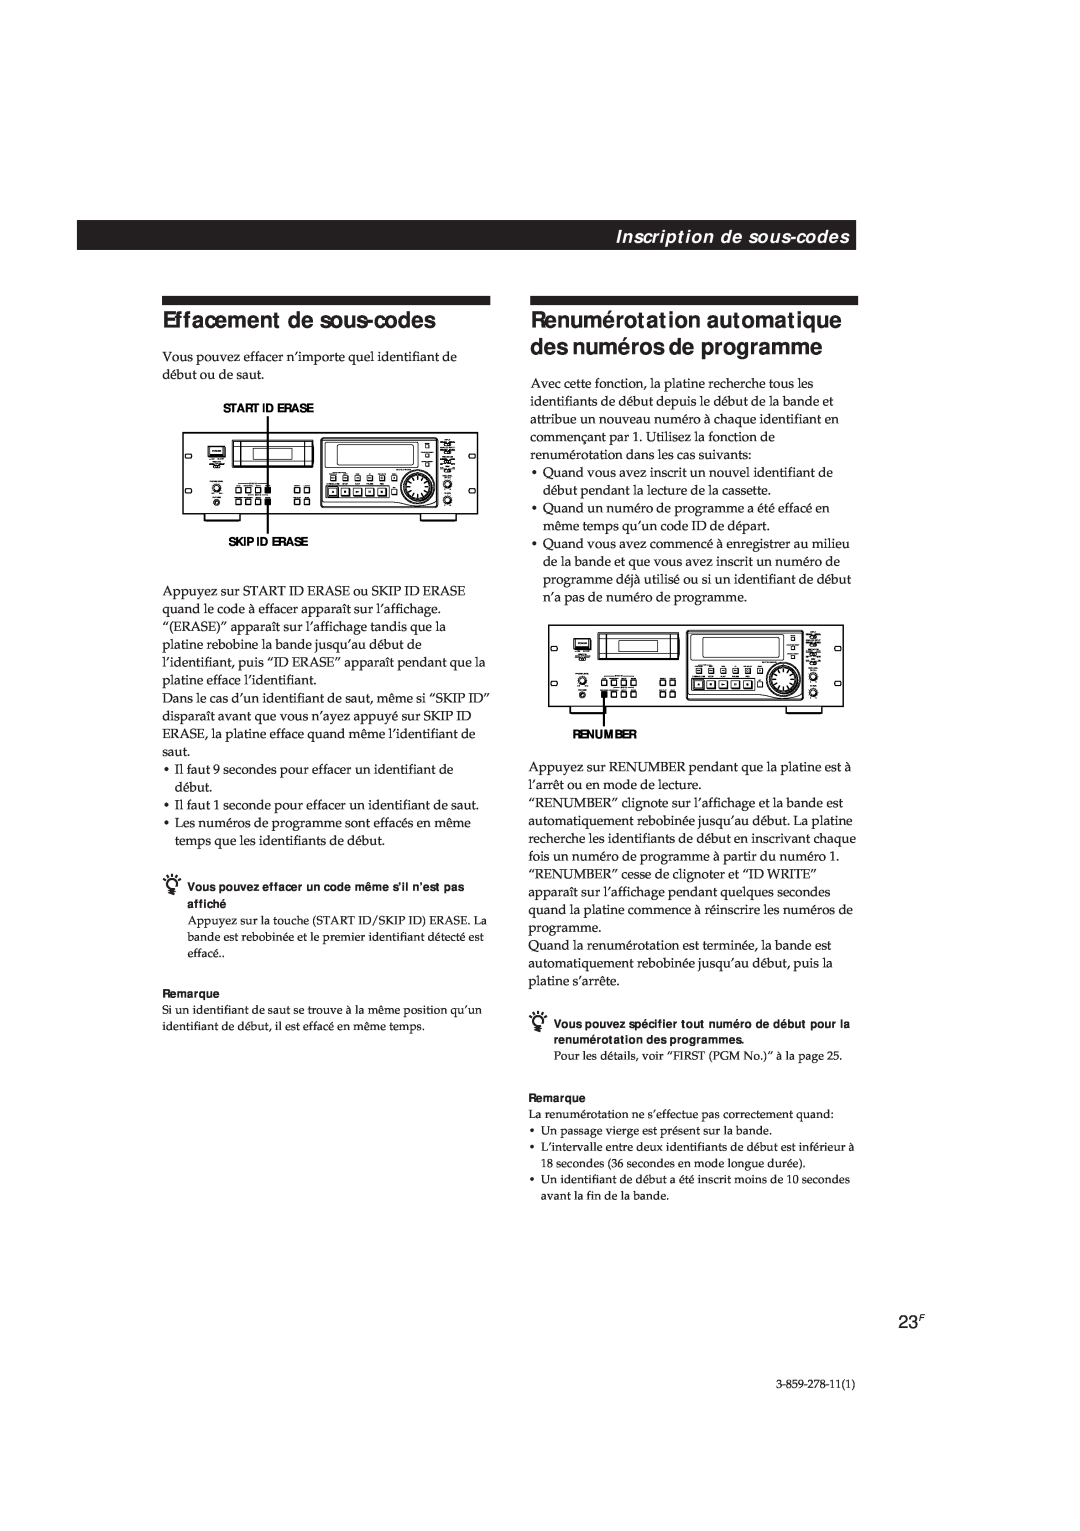 Sony PCM-R700, PCM-R500 manual Effacement de sous-codes, Inscription de sous-codes, Remarque 